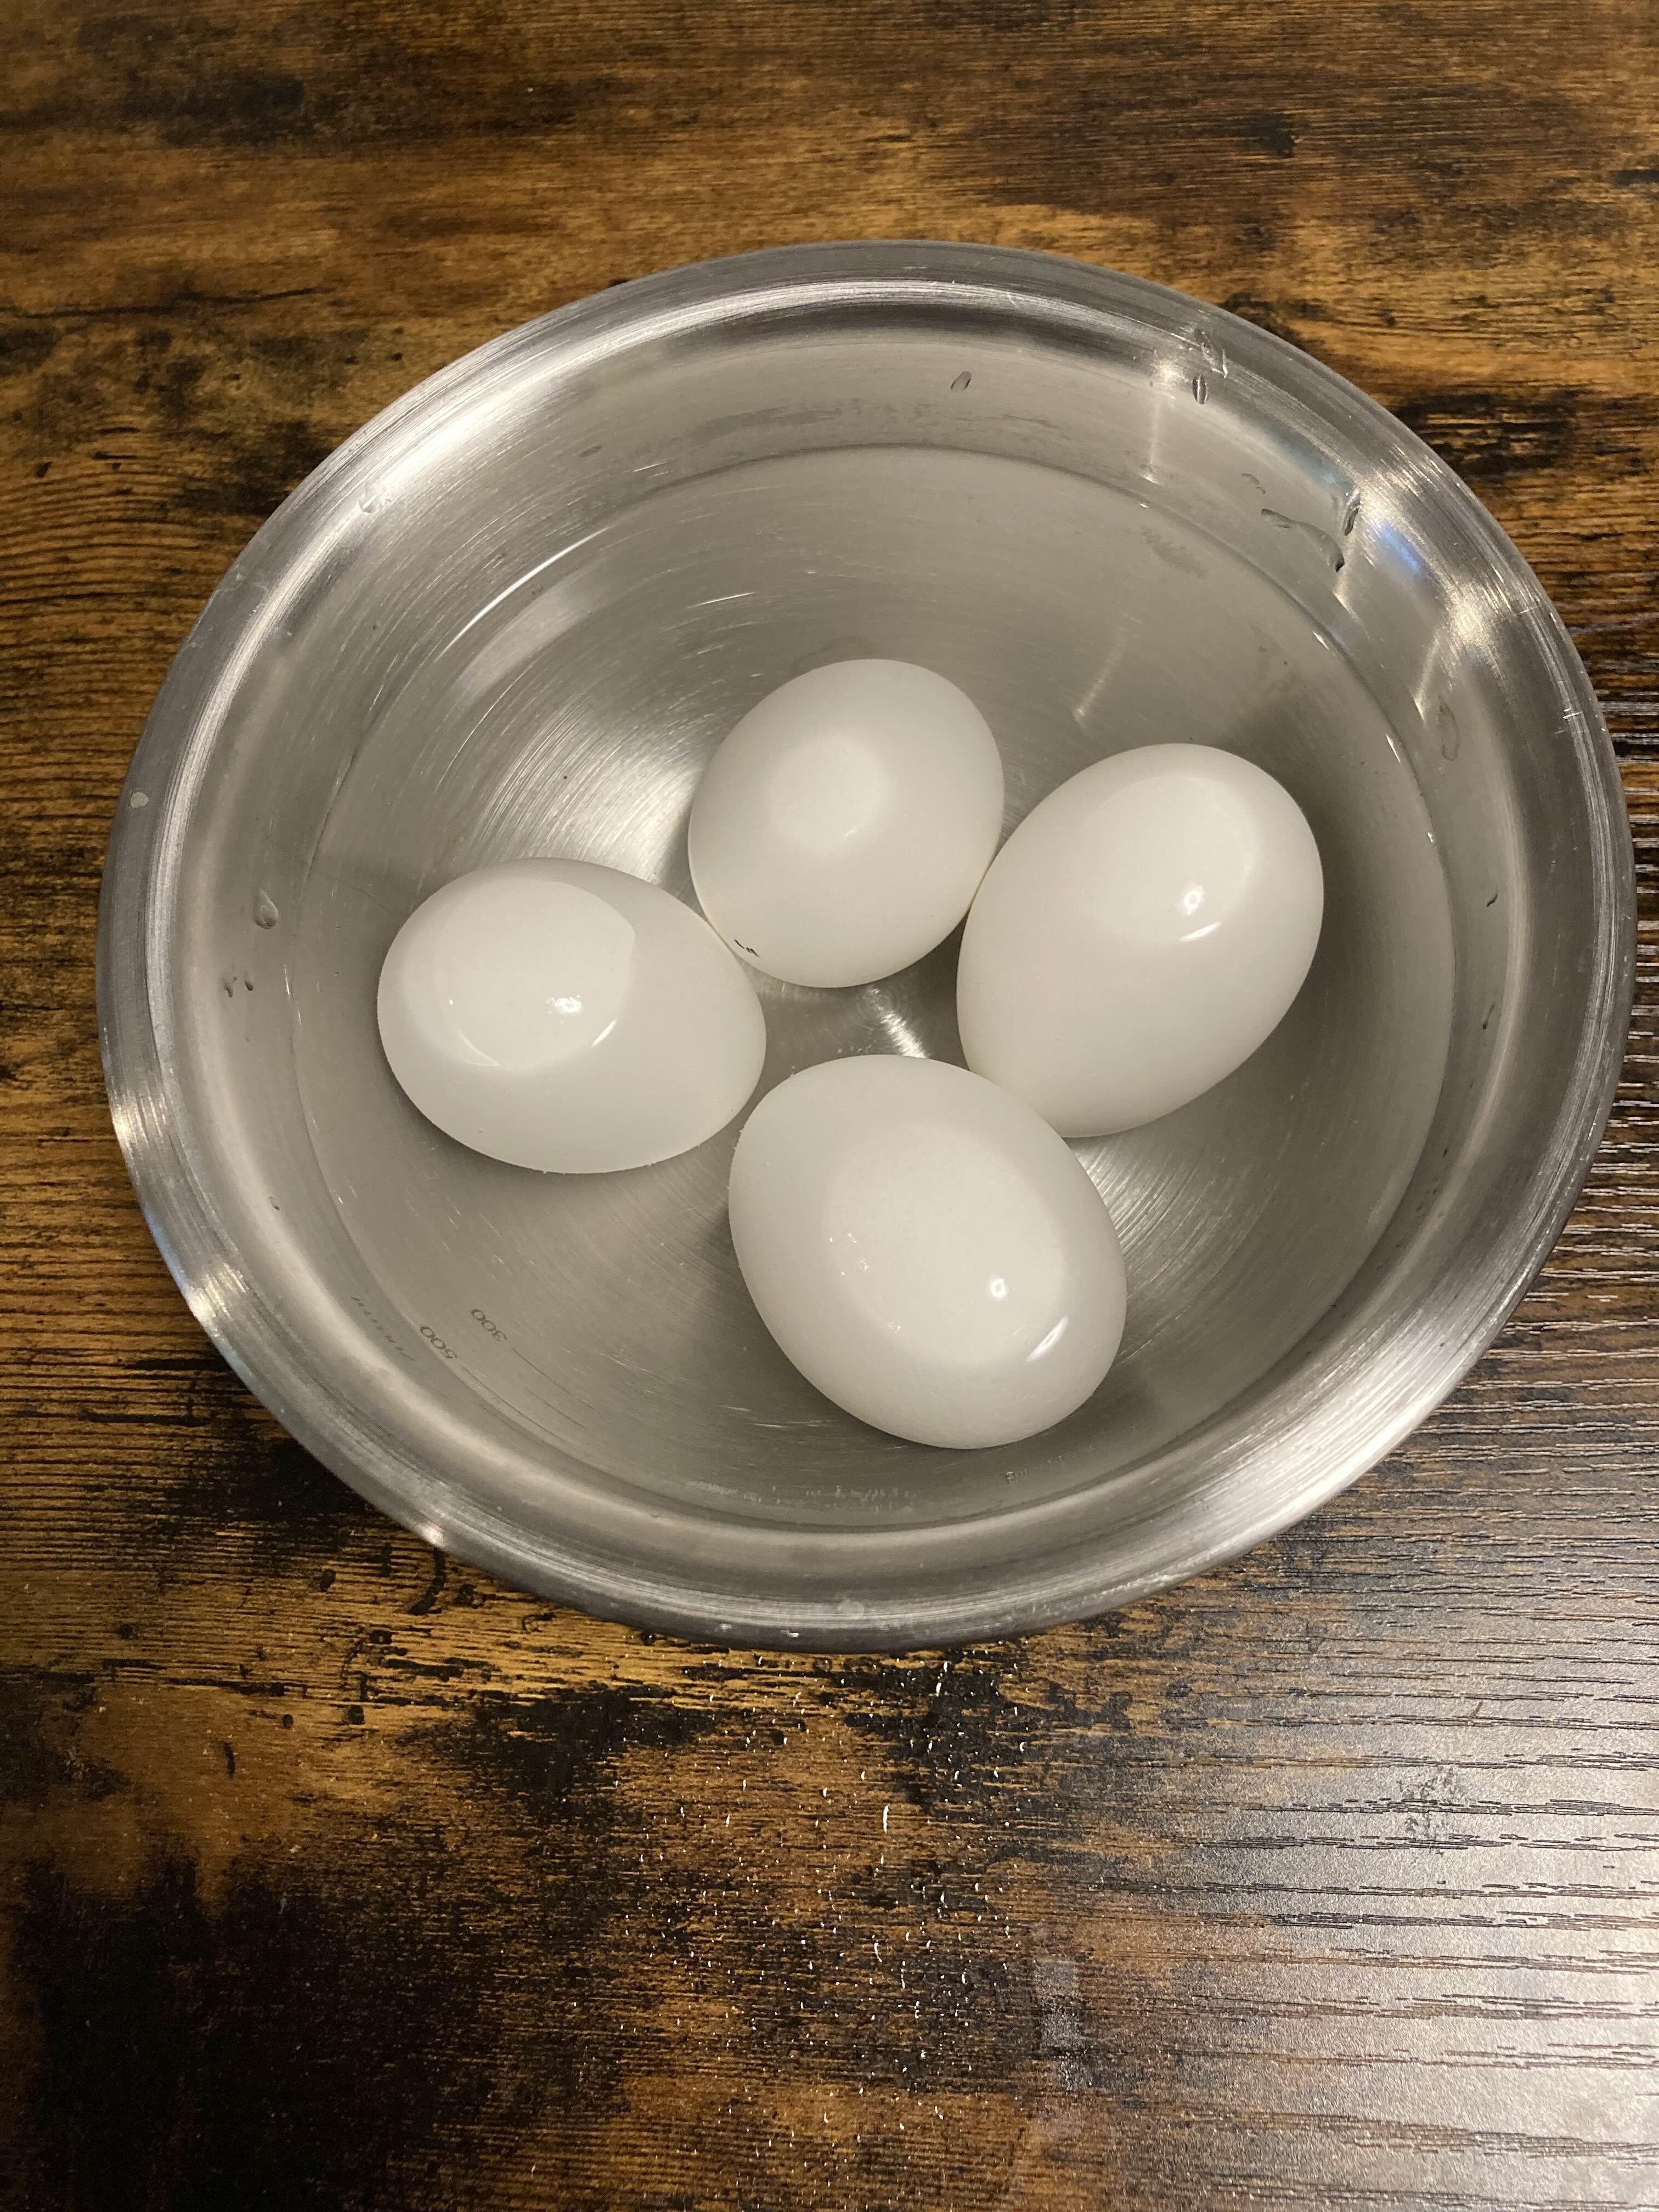 金属製のボウルに入った4つの白い卵。